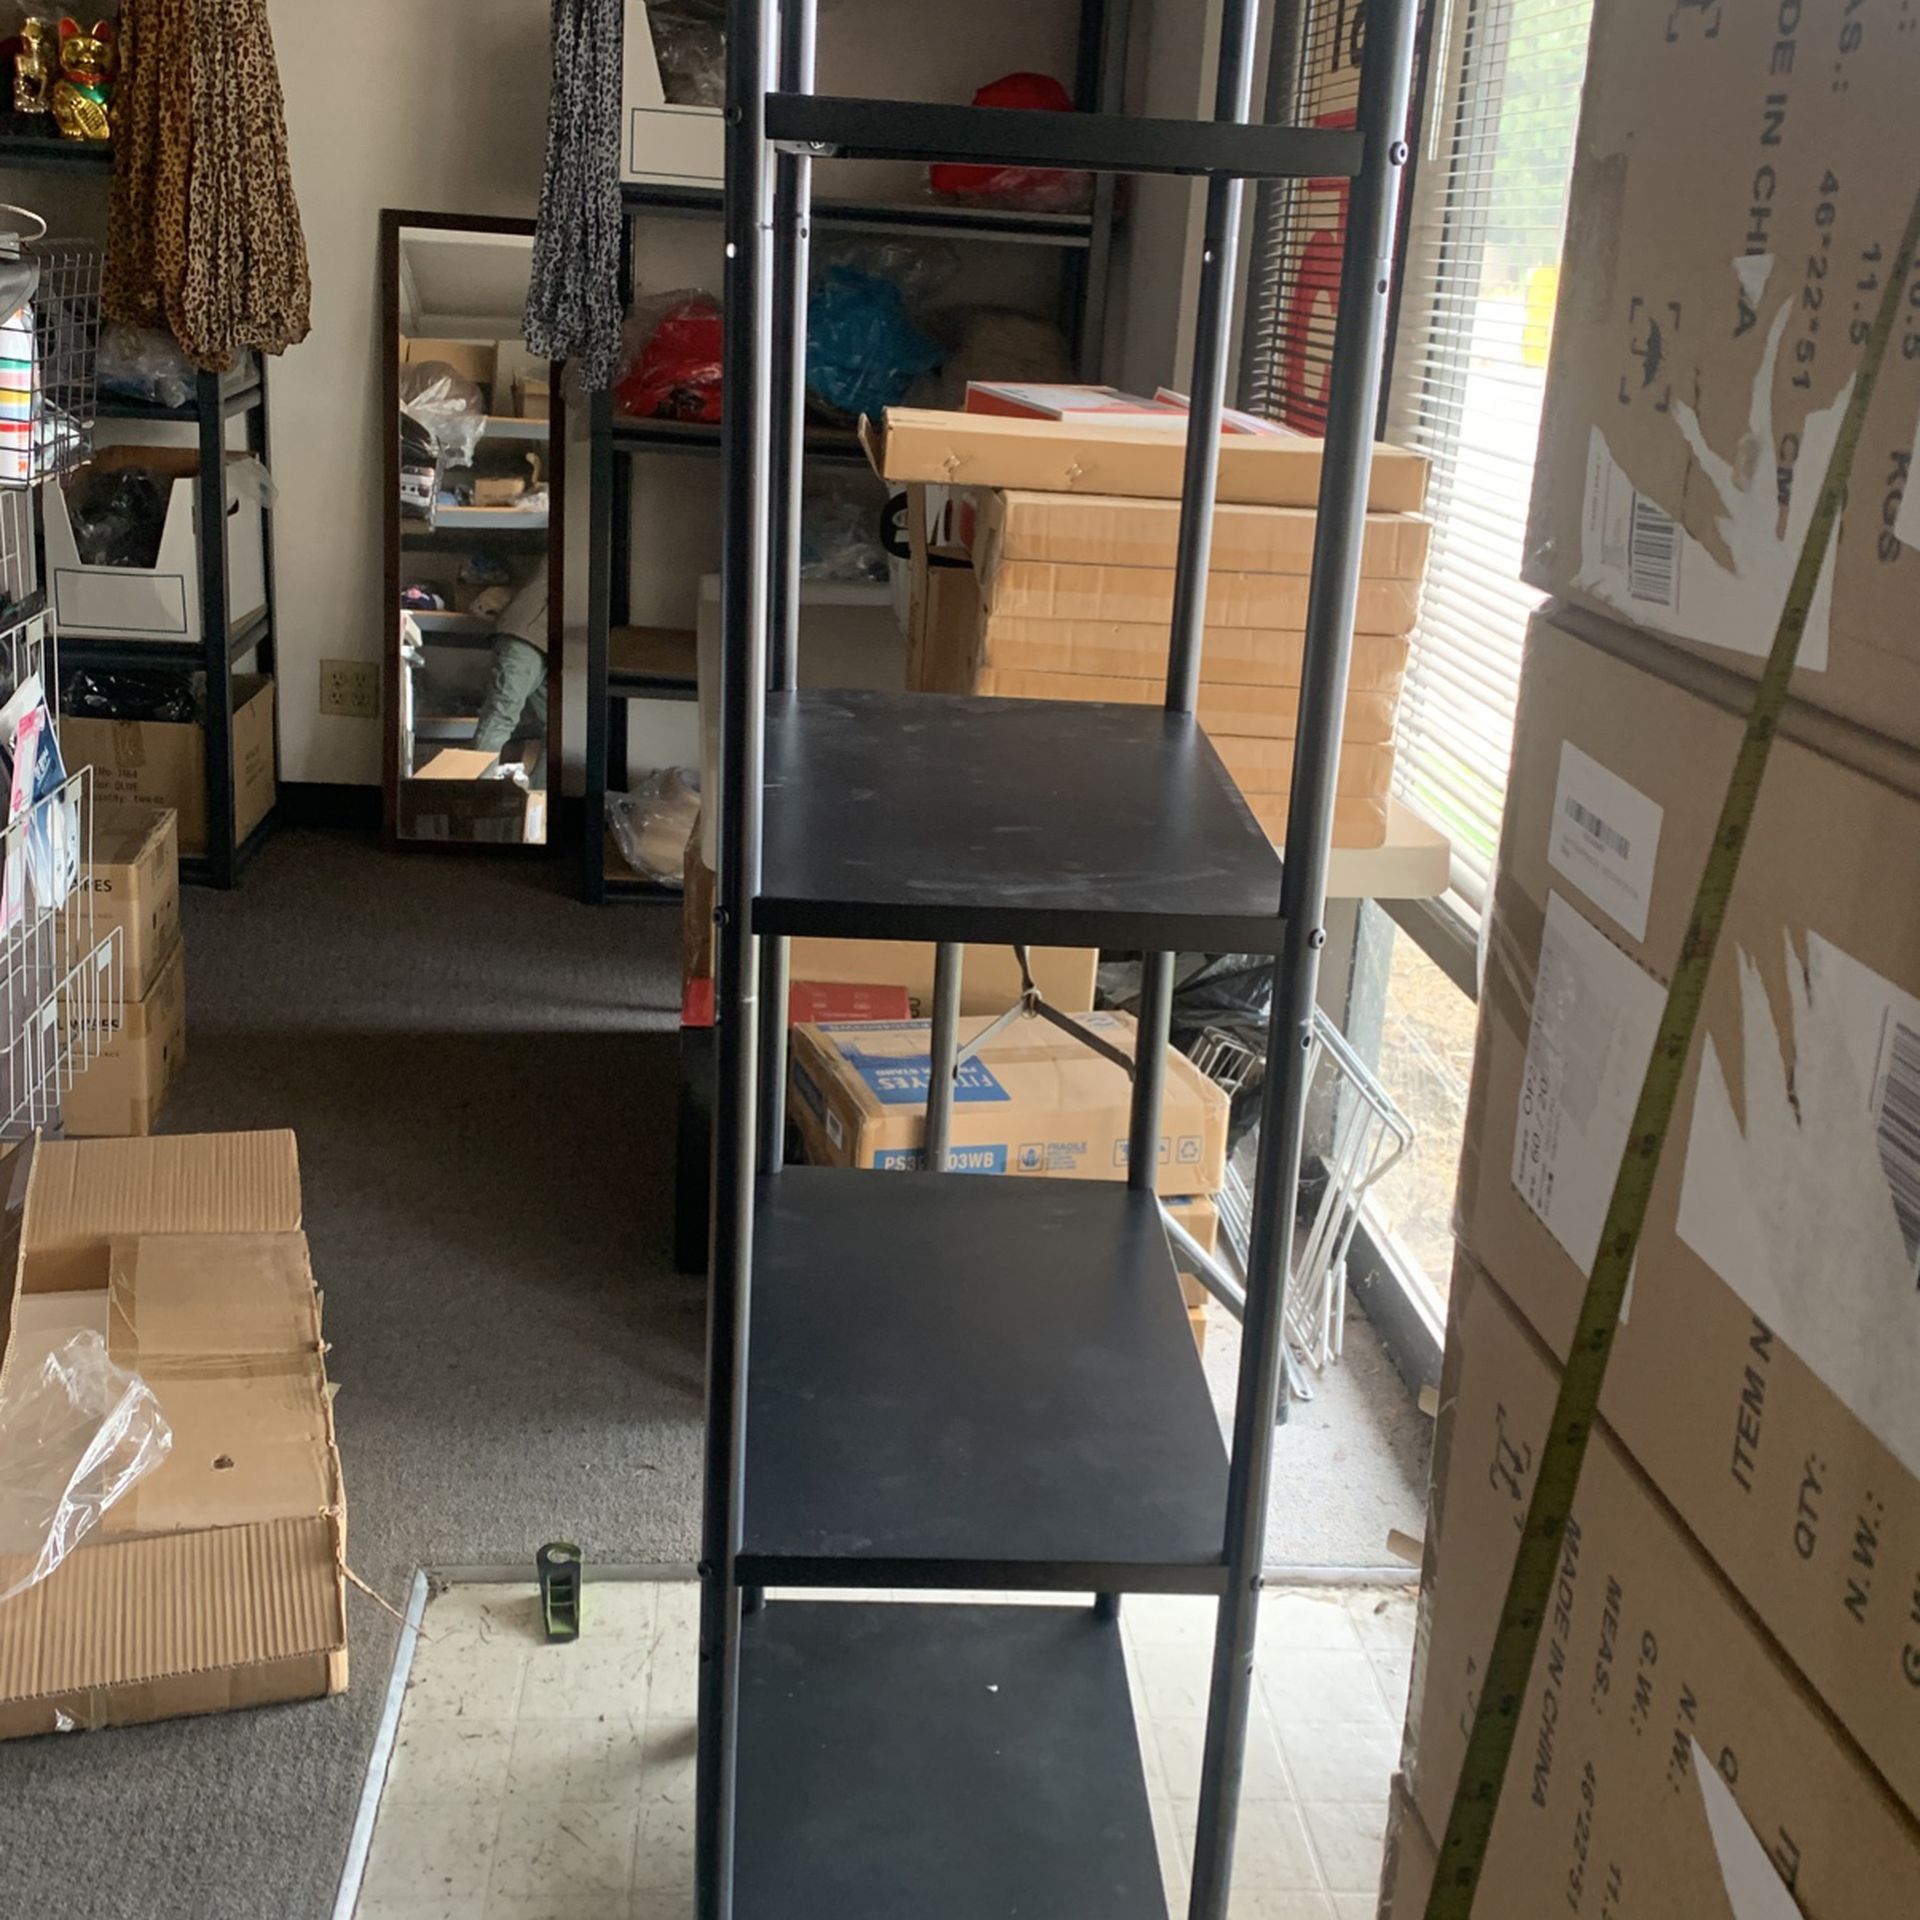 5 Tier Metal Shelf Shelving 17lbs Adjustable Heights Kitchen Bedroom Office Warehouse Storage Garage Rack